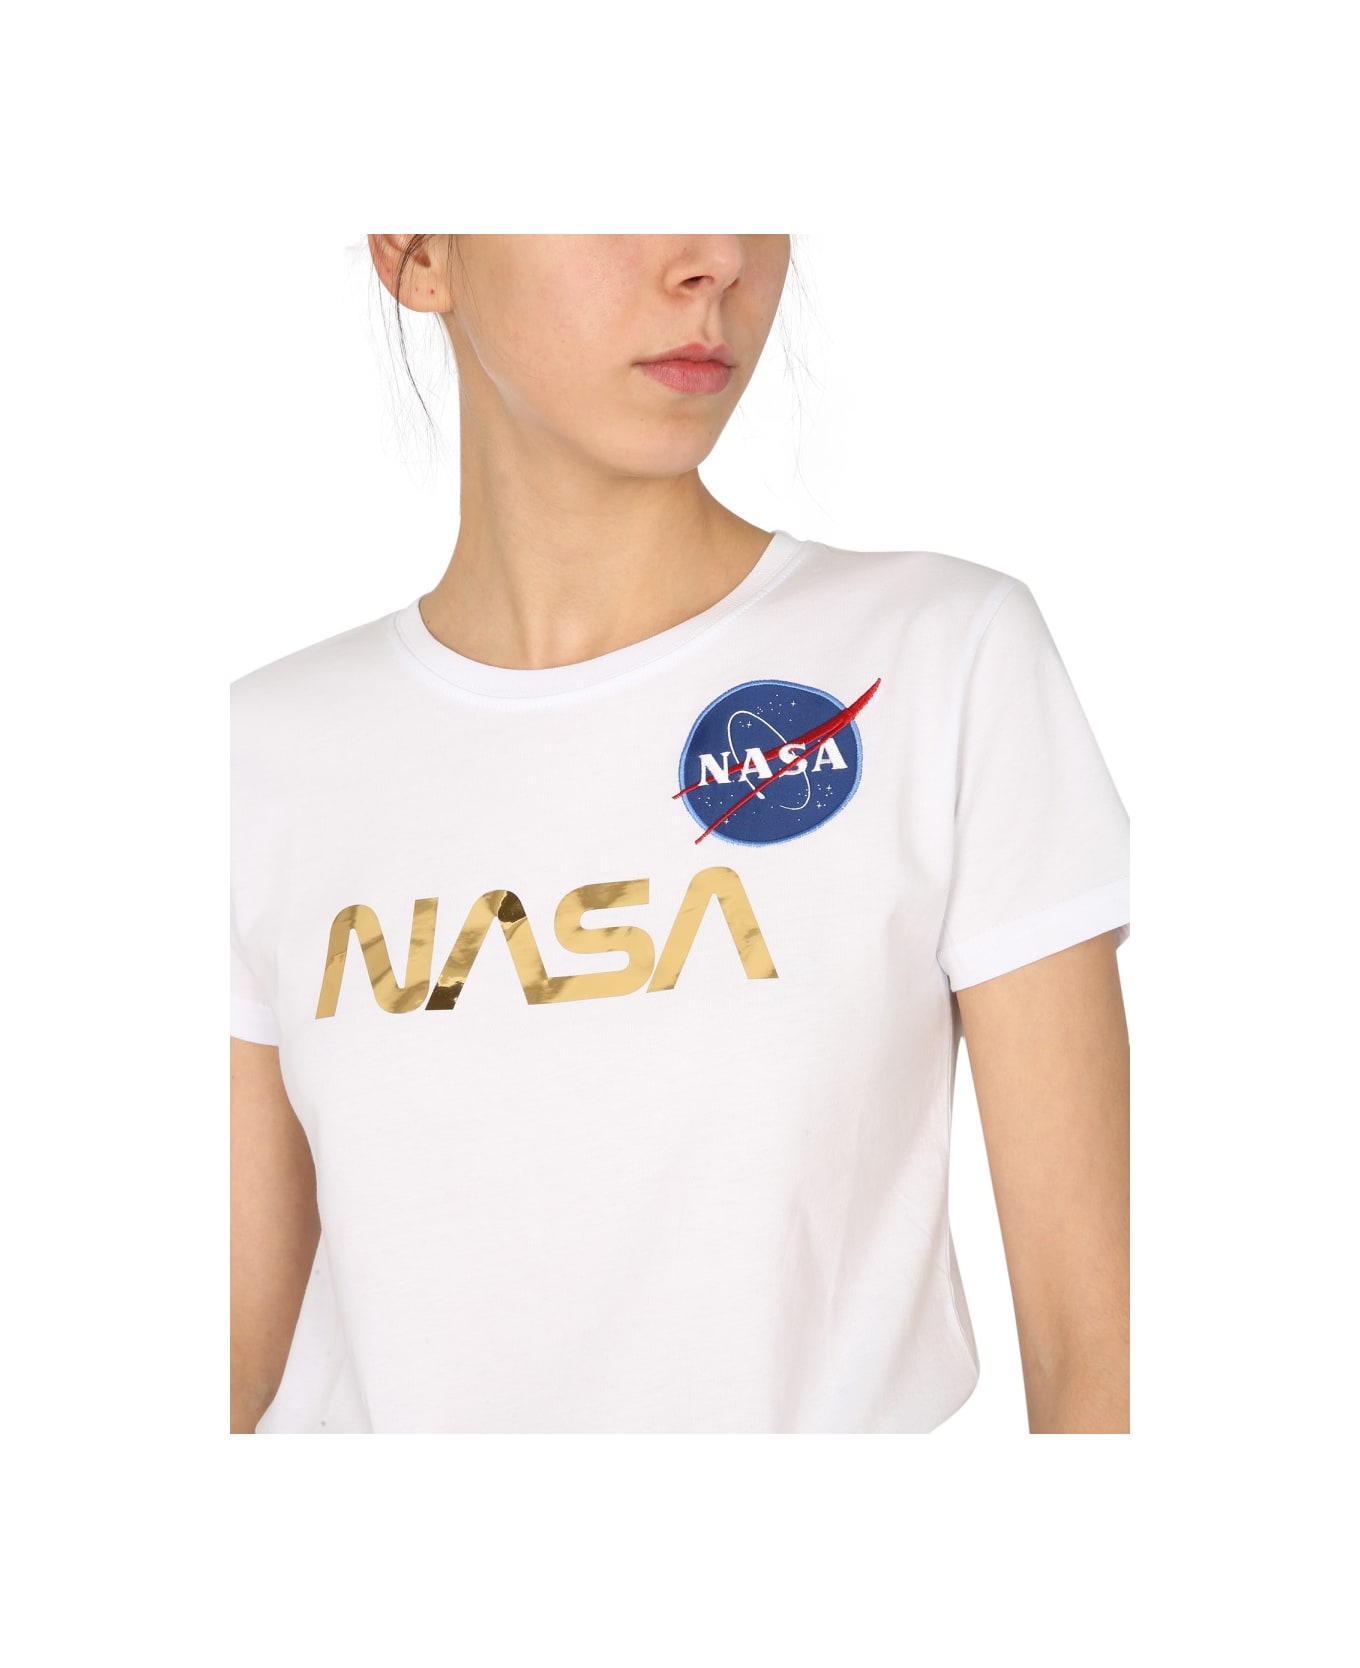 Alpha Industries "nasa" T-shirt - GOLD